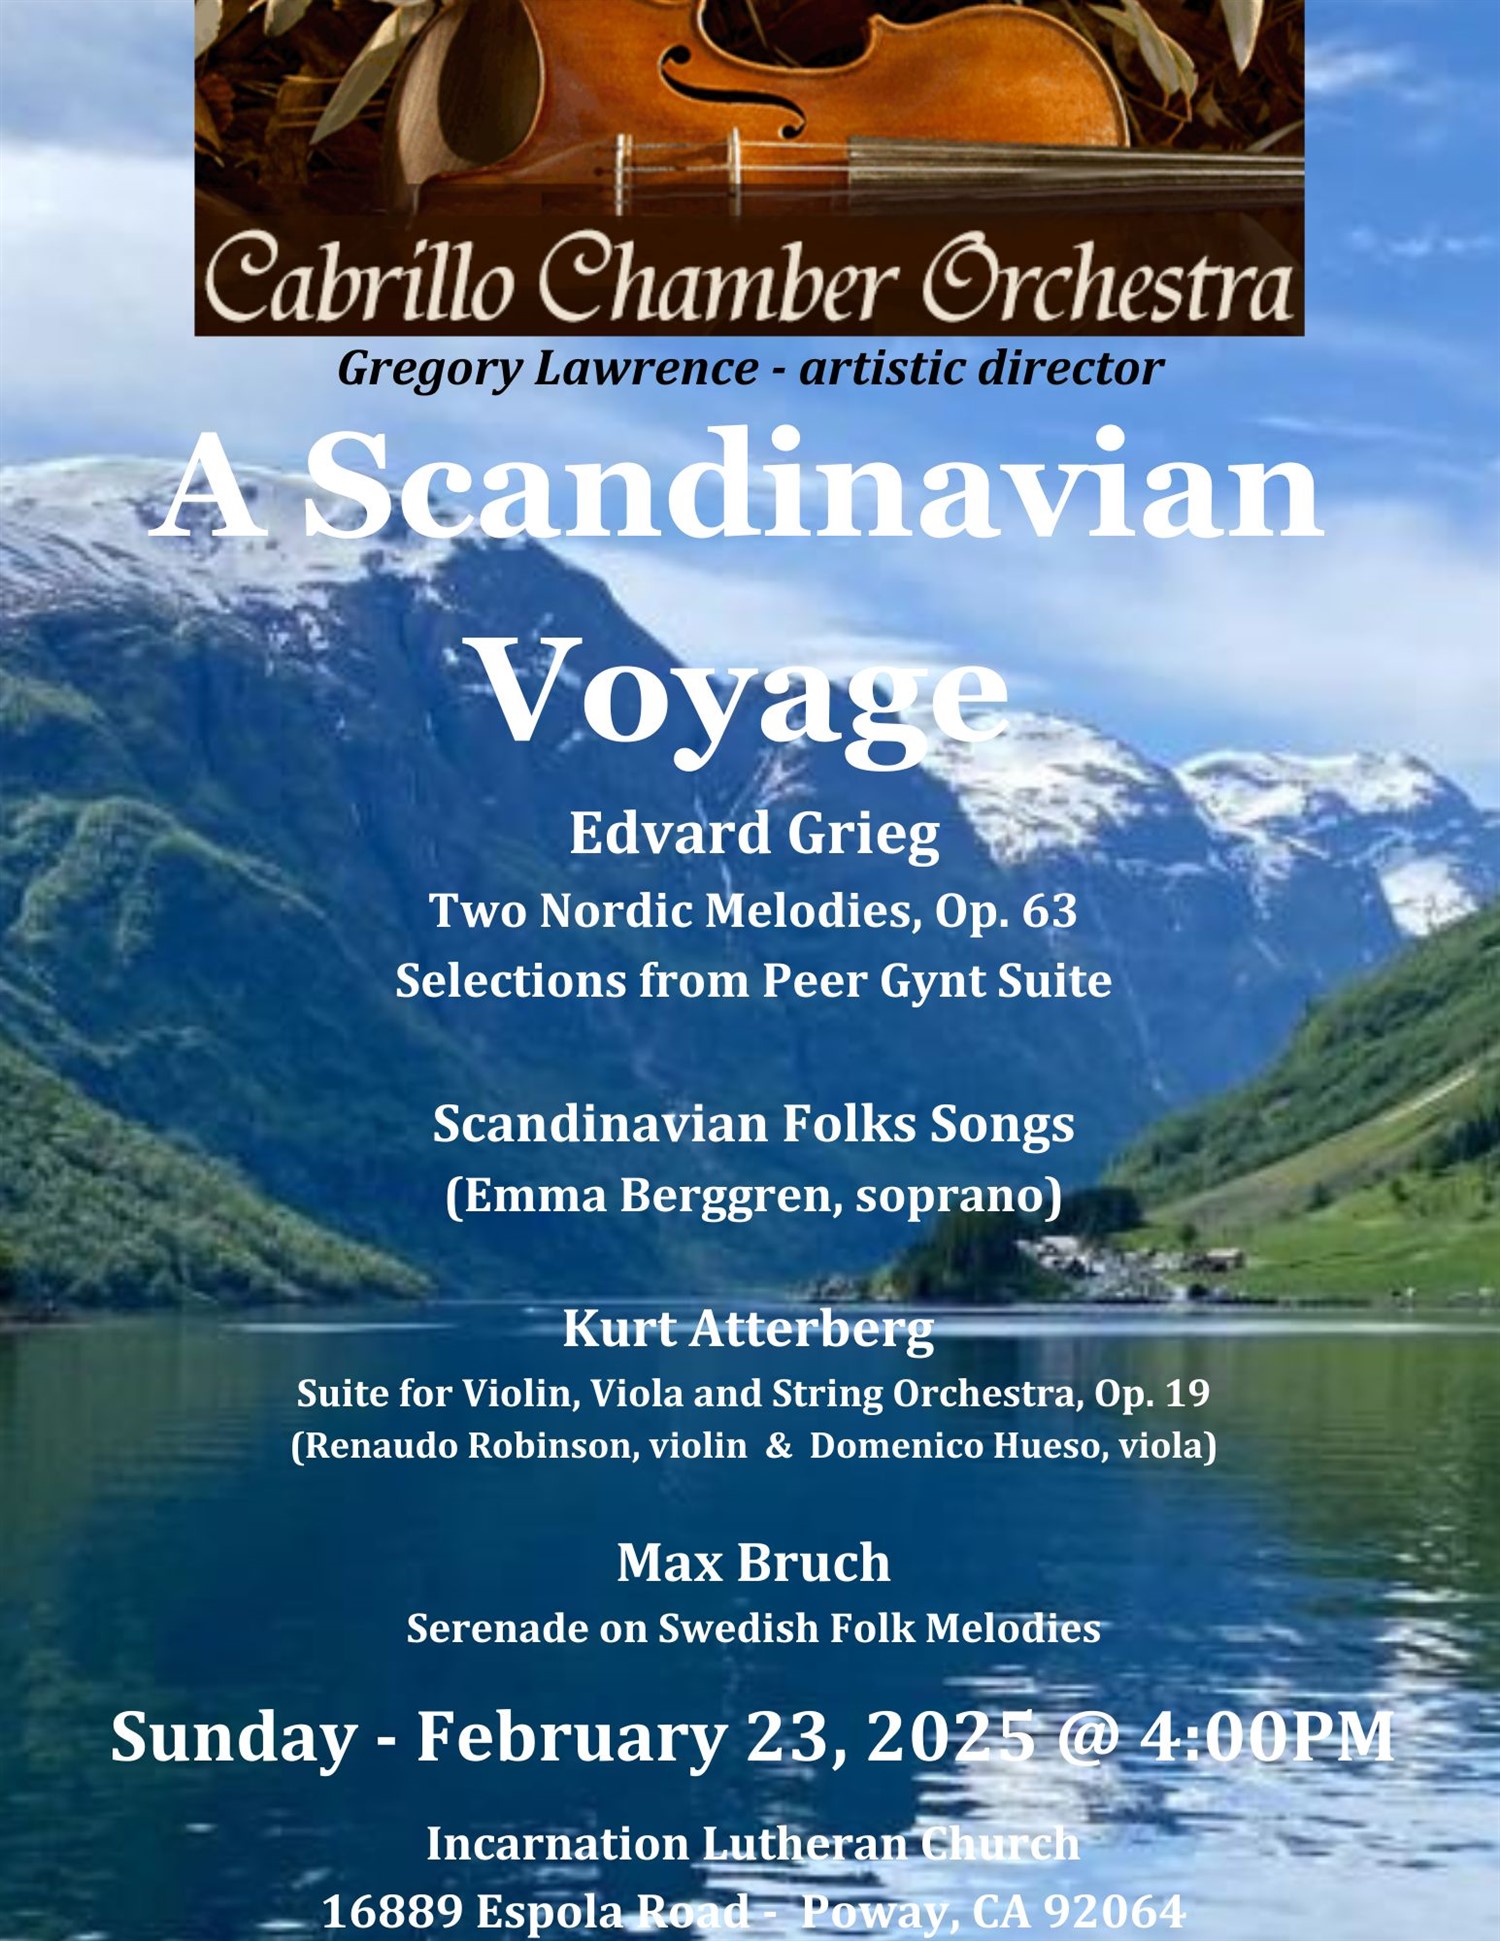 'A Scandinavian Voyage'  on feb. 23, 04:00@Incarnation Lutheran Church - Compra entradas y obtén información enCabrillo Chamber Orchestra 